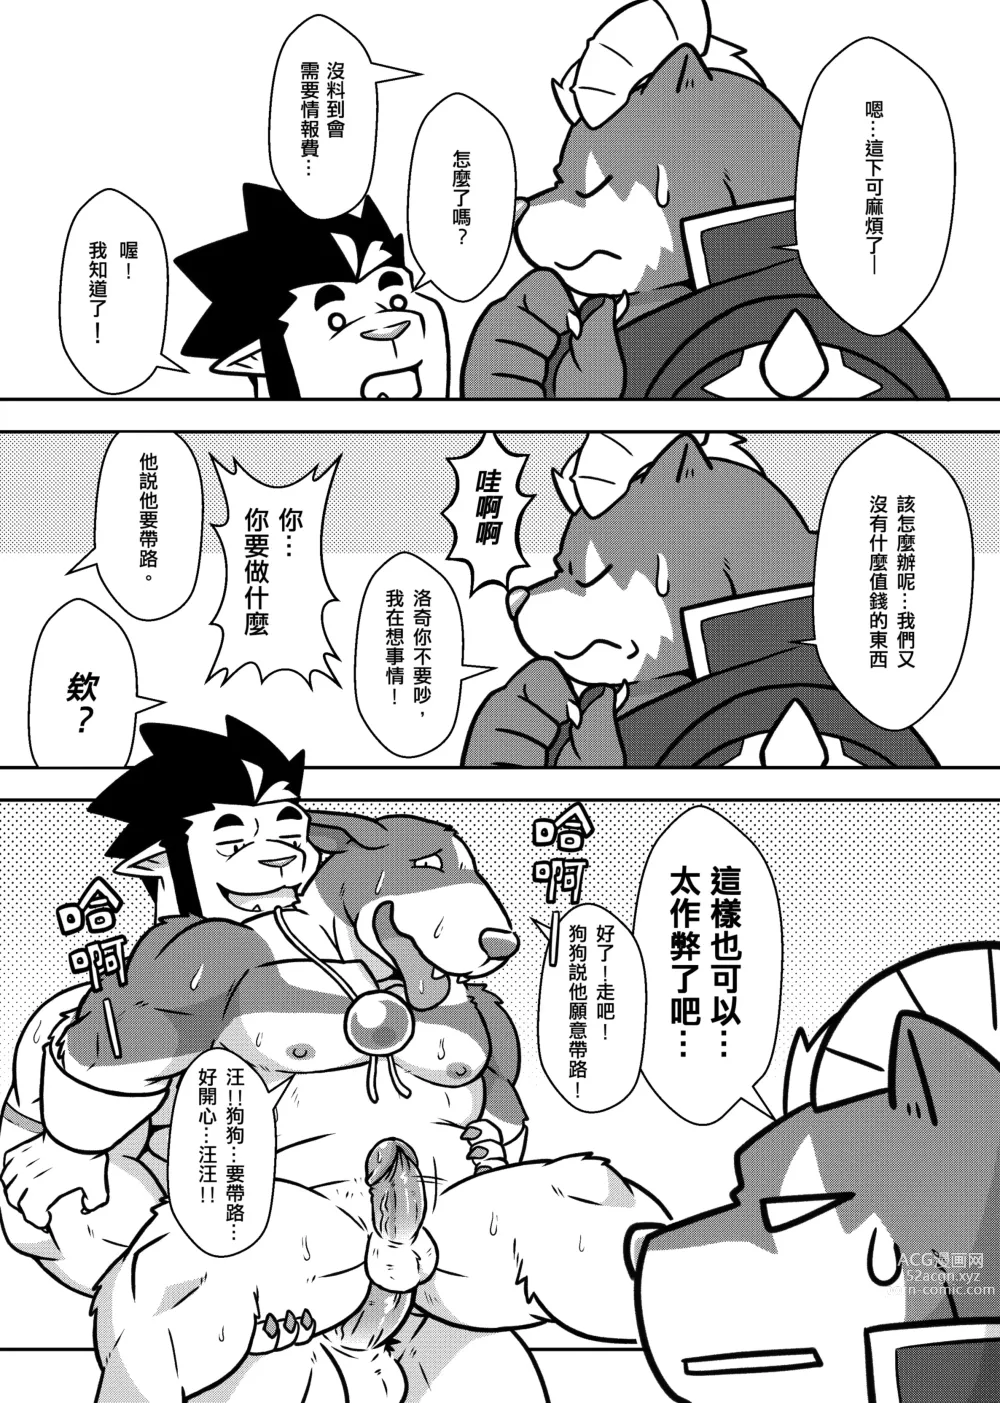 Page 11 of doujinshi 勇者的大小只有魔王塞得下2